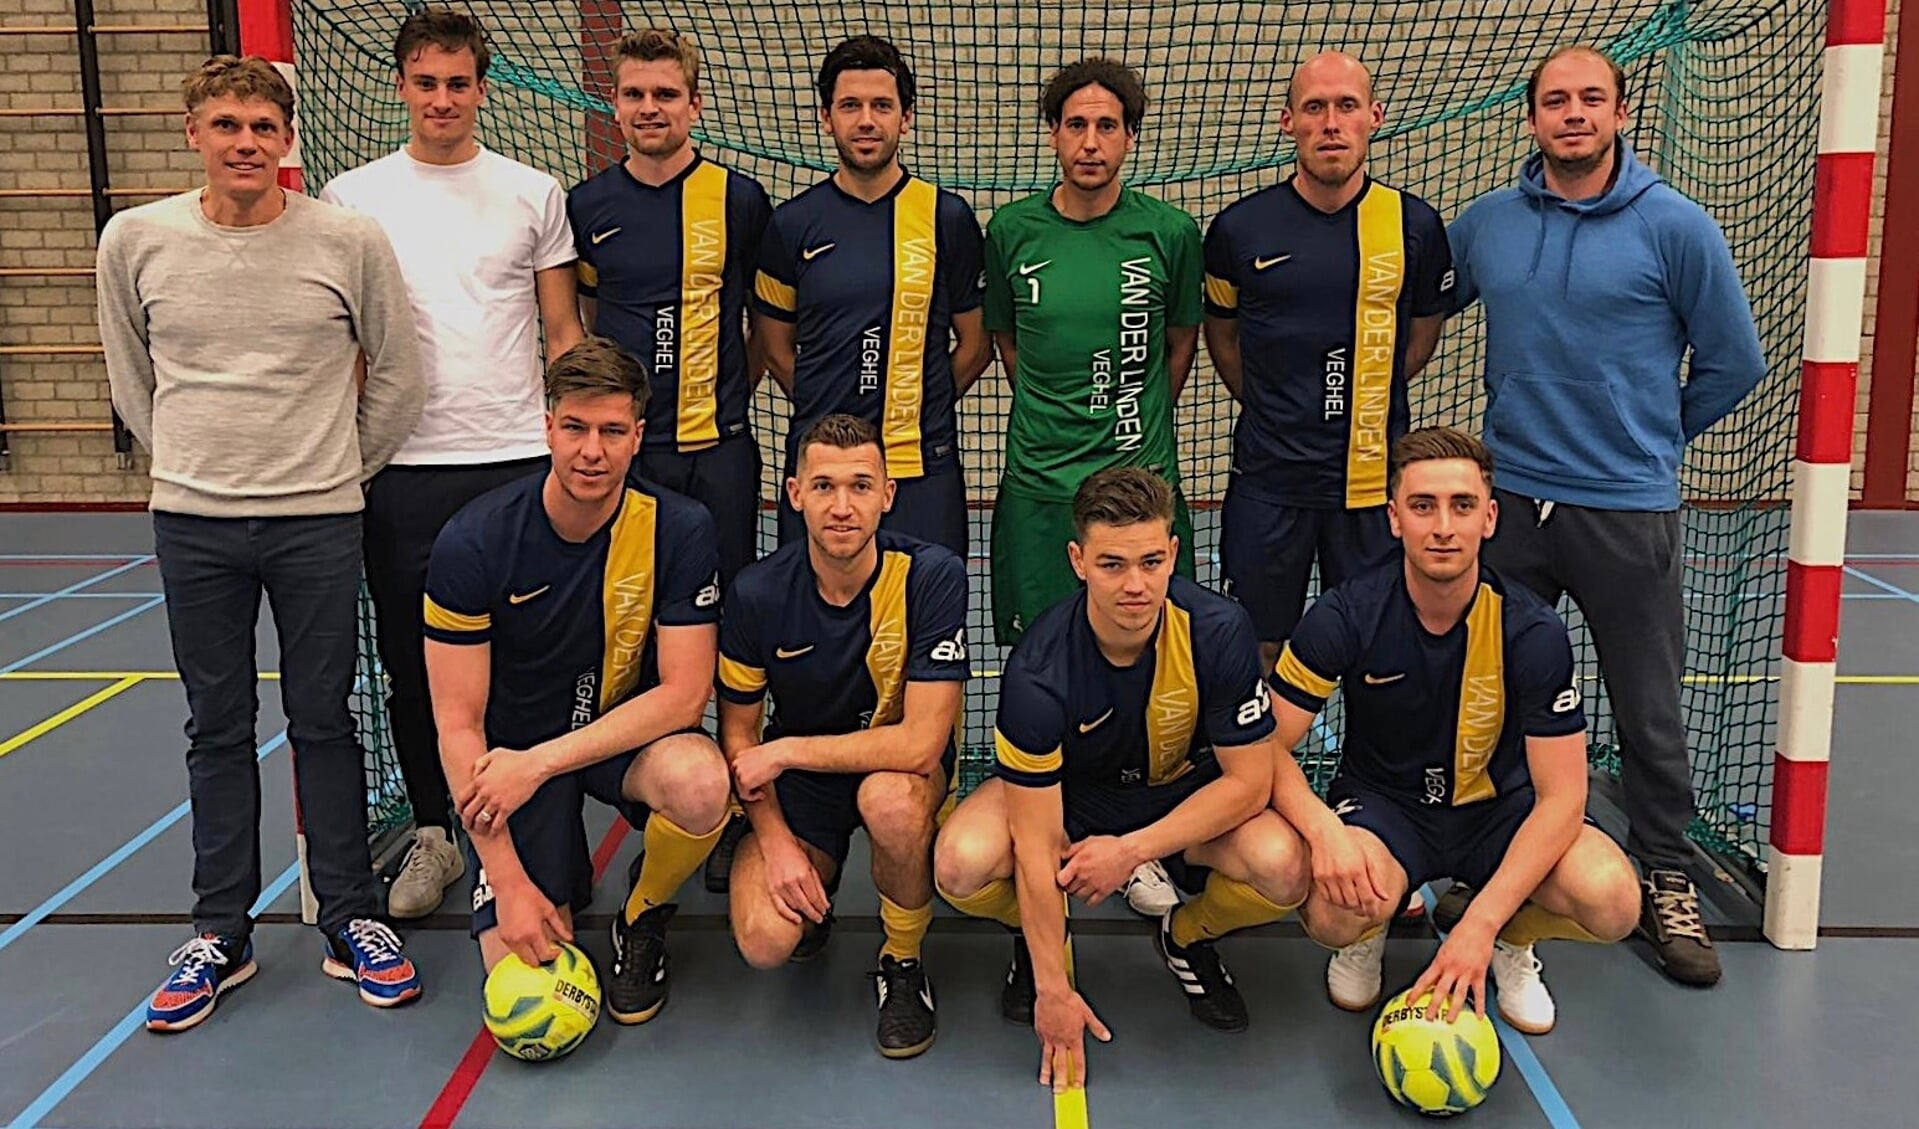 Archieffoto: Van der Linden Futsal pakte in 2019 de titel in de zaal. Staand in het midden: Sander Driessen. Gehurkt eerste van links: Cristian van den Broek.